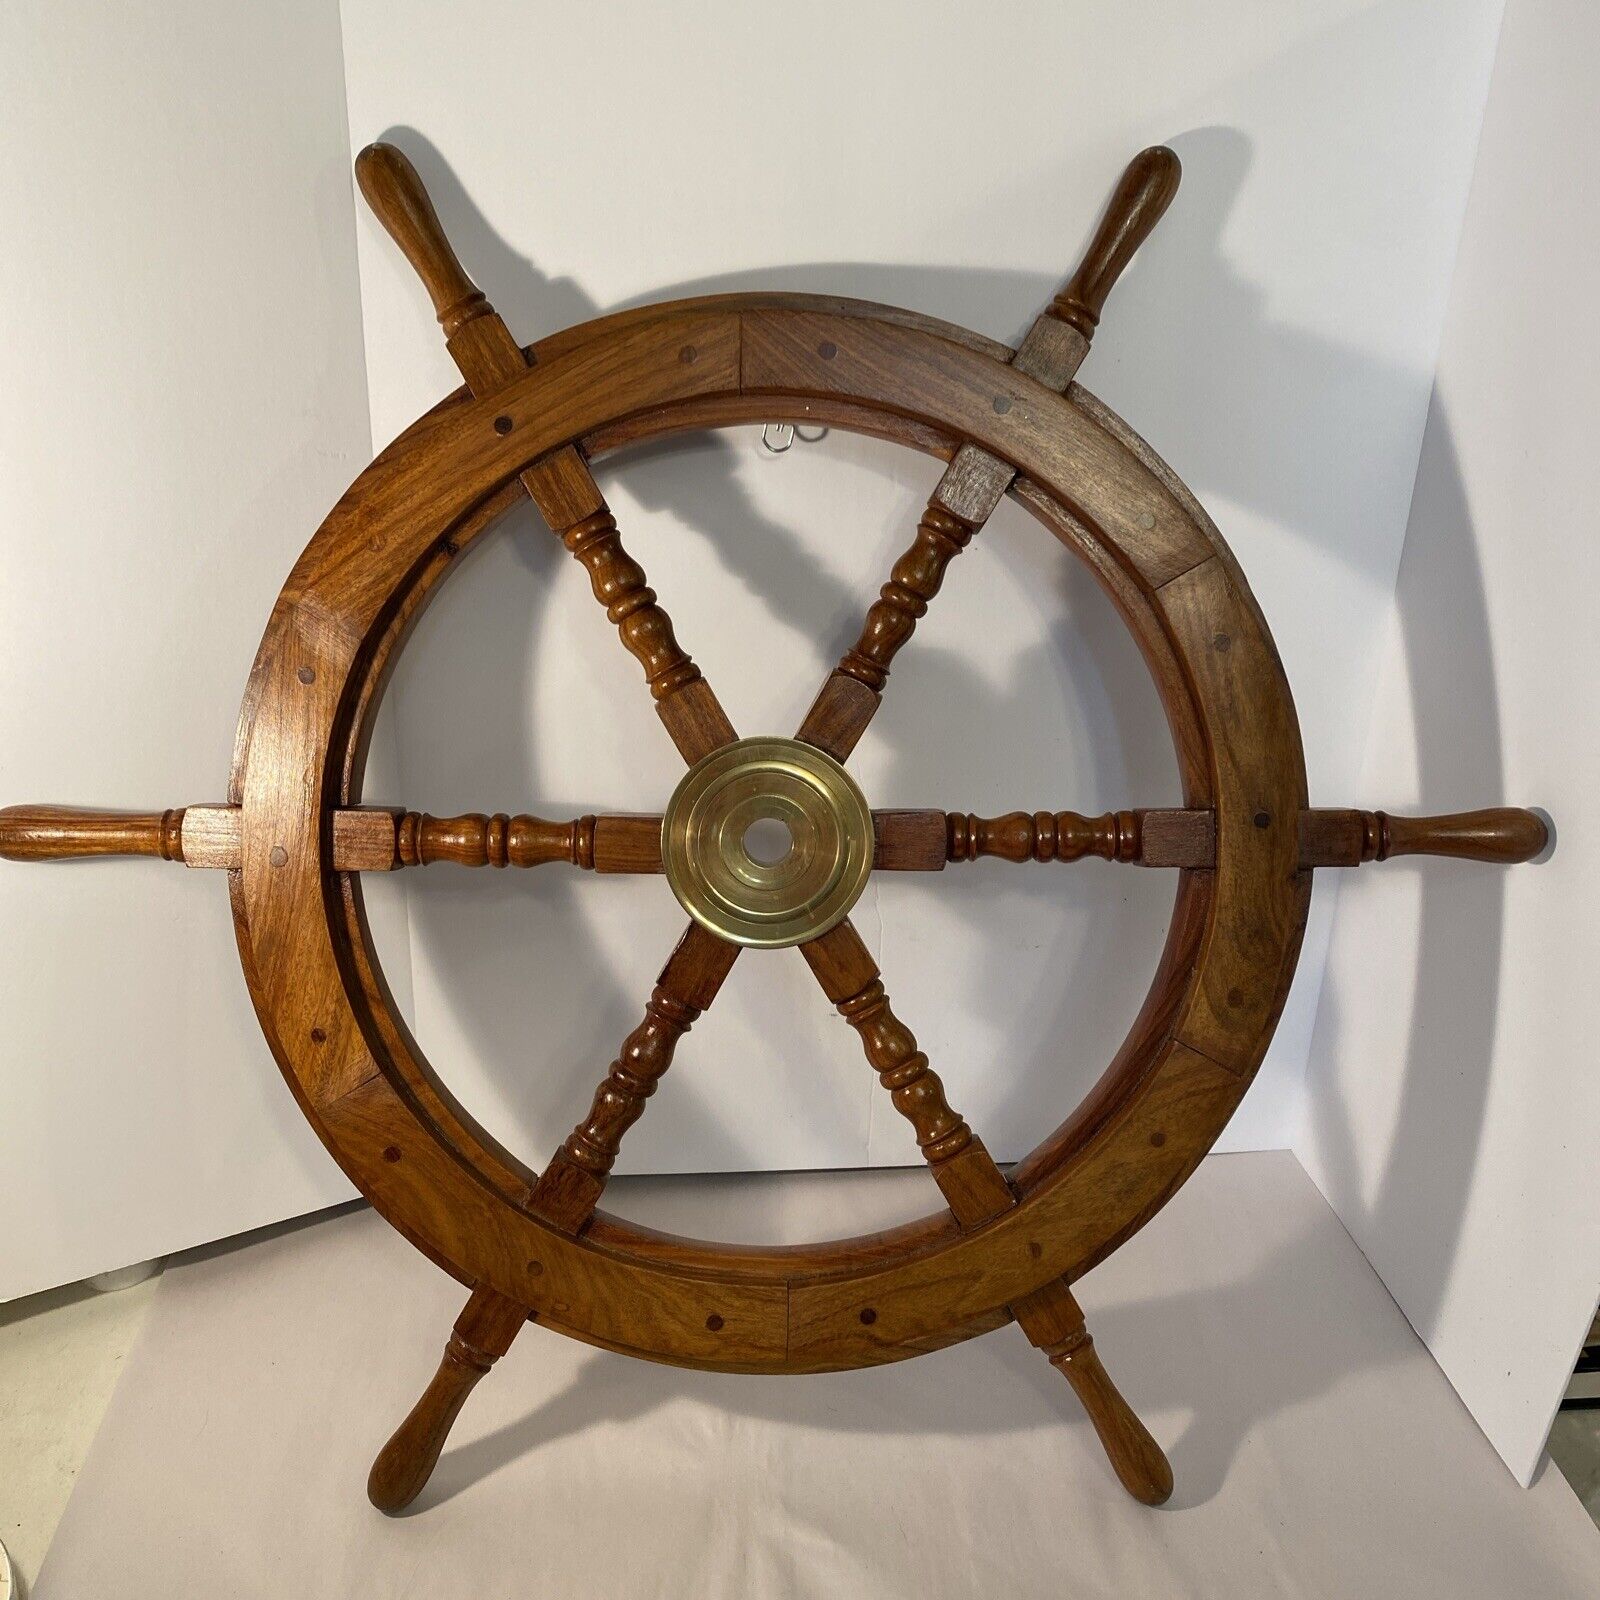 30 1/2” Big Ship Steering Wheel Wooden & Brass Nautical Boat Wood Wall Display